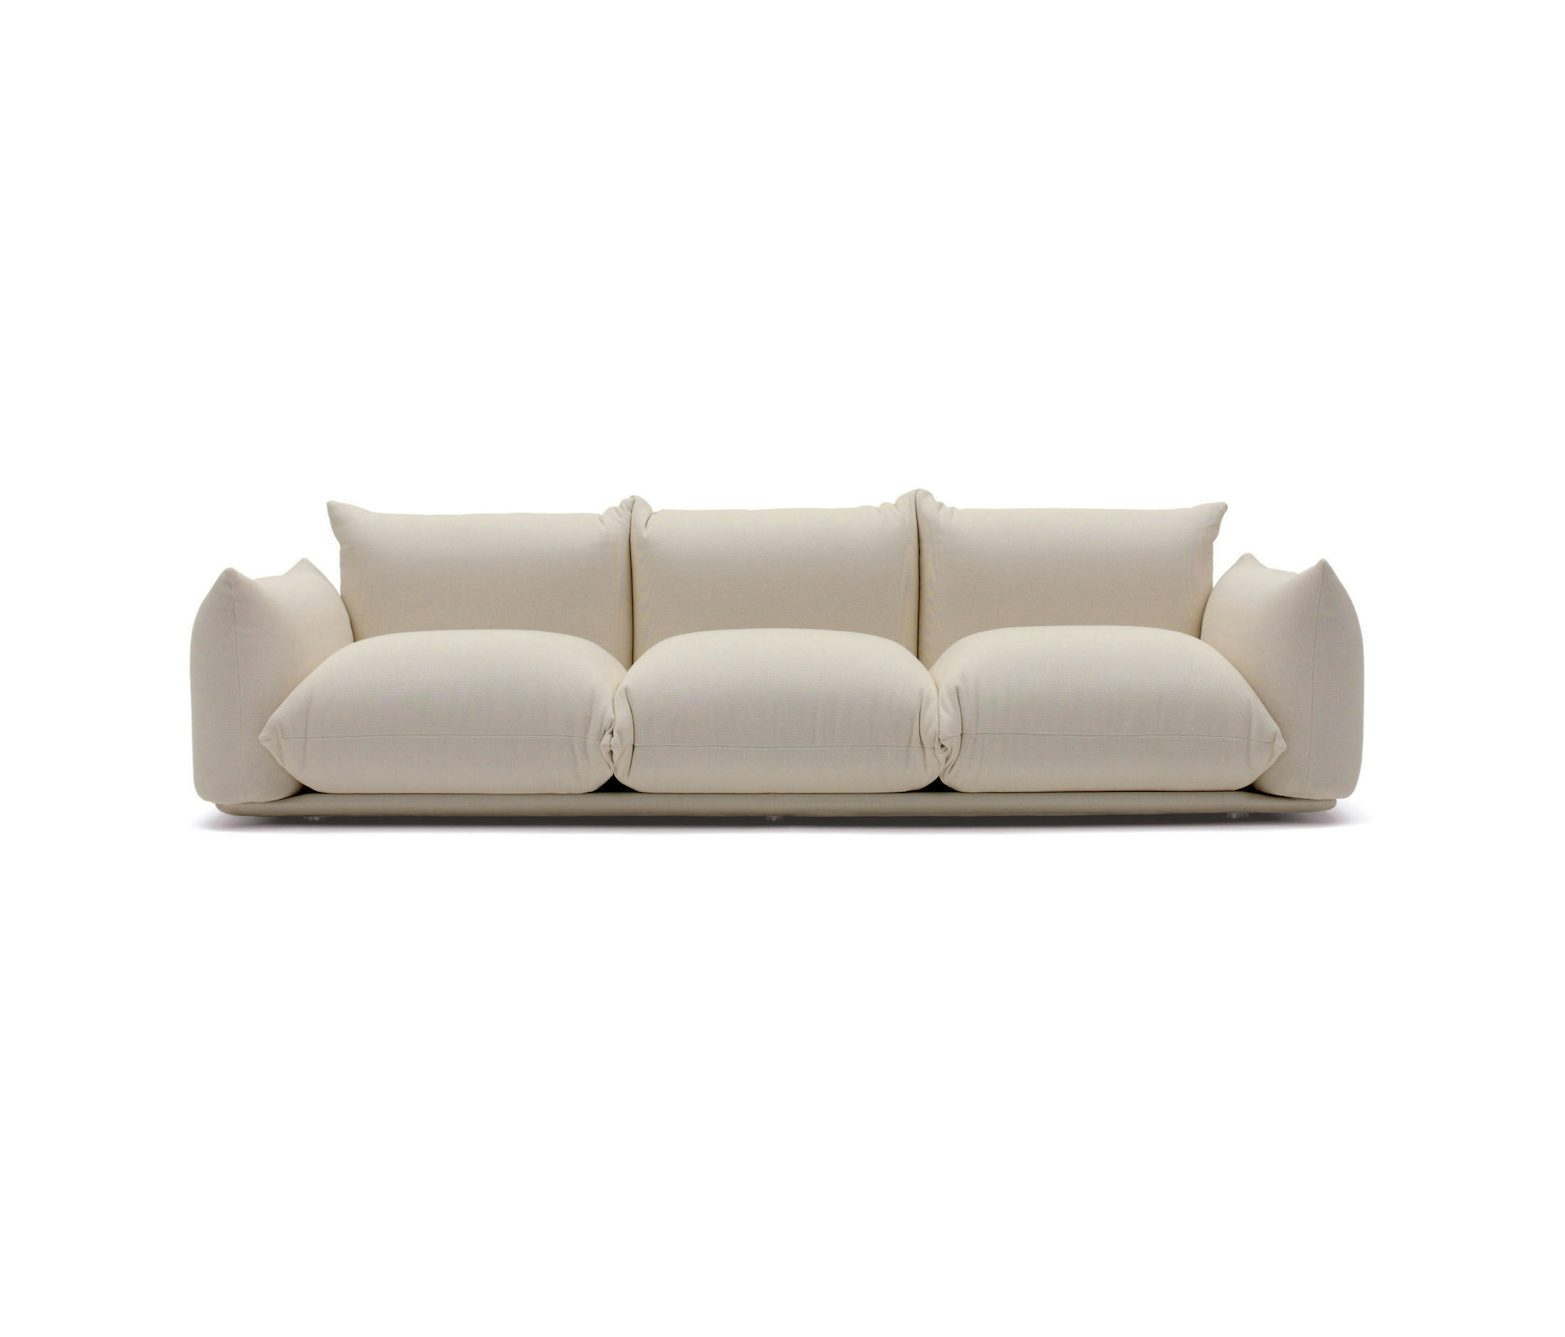 Marenco sofa 3